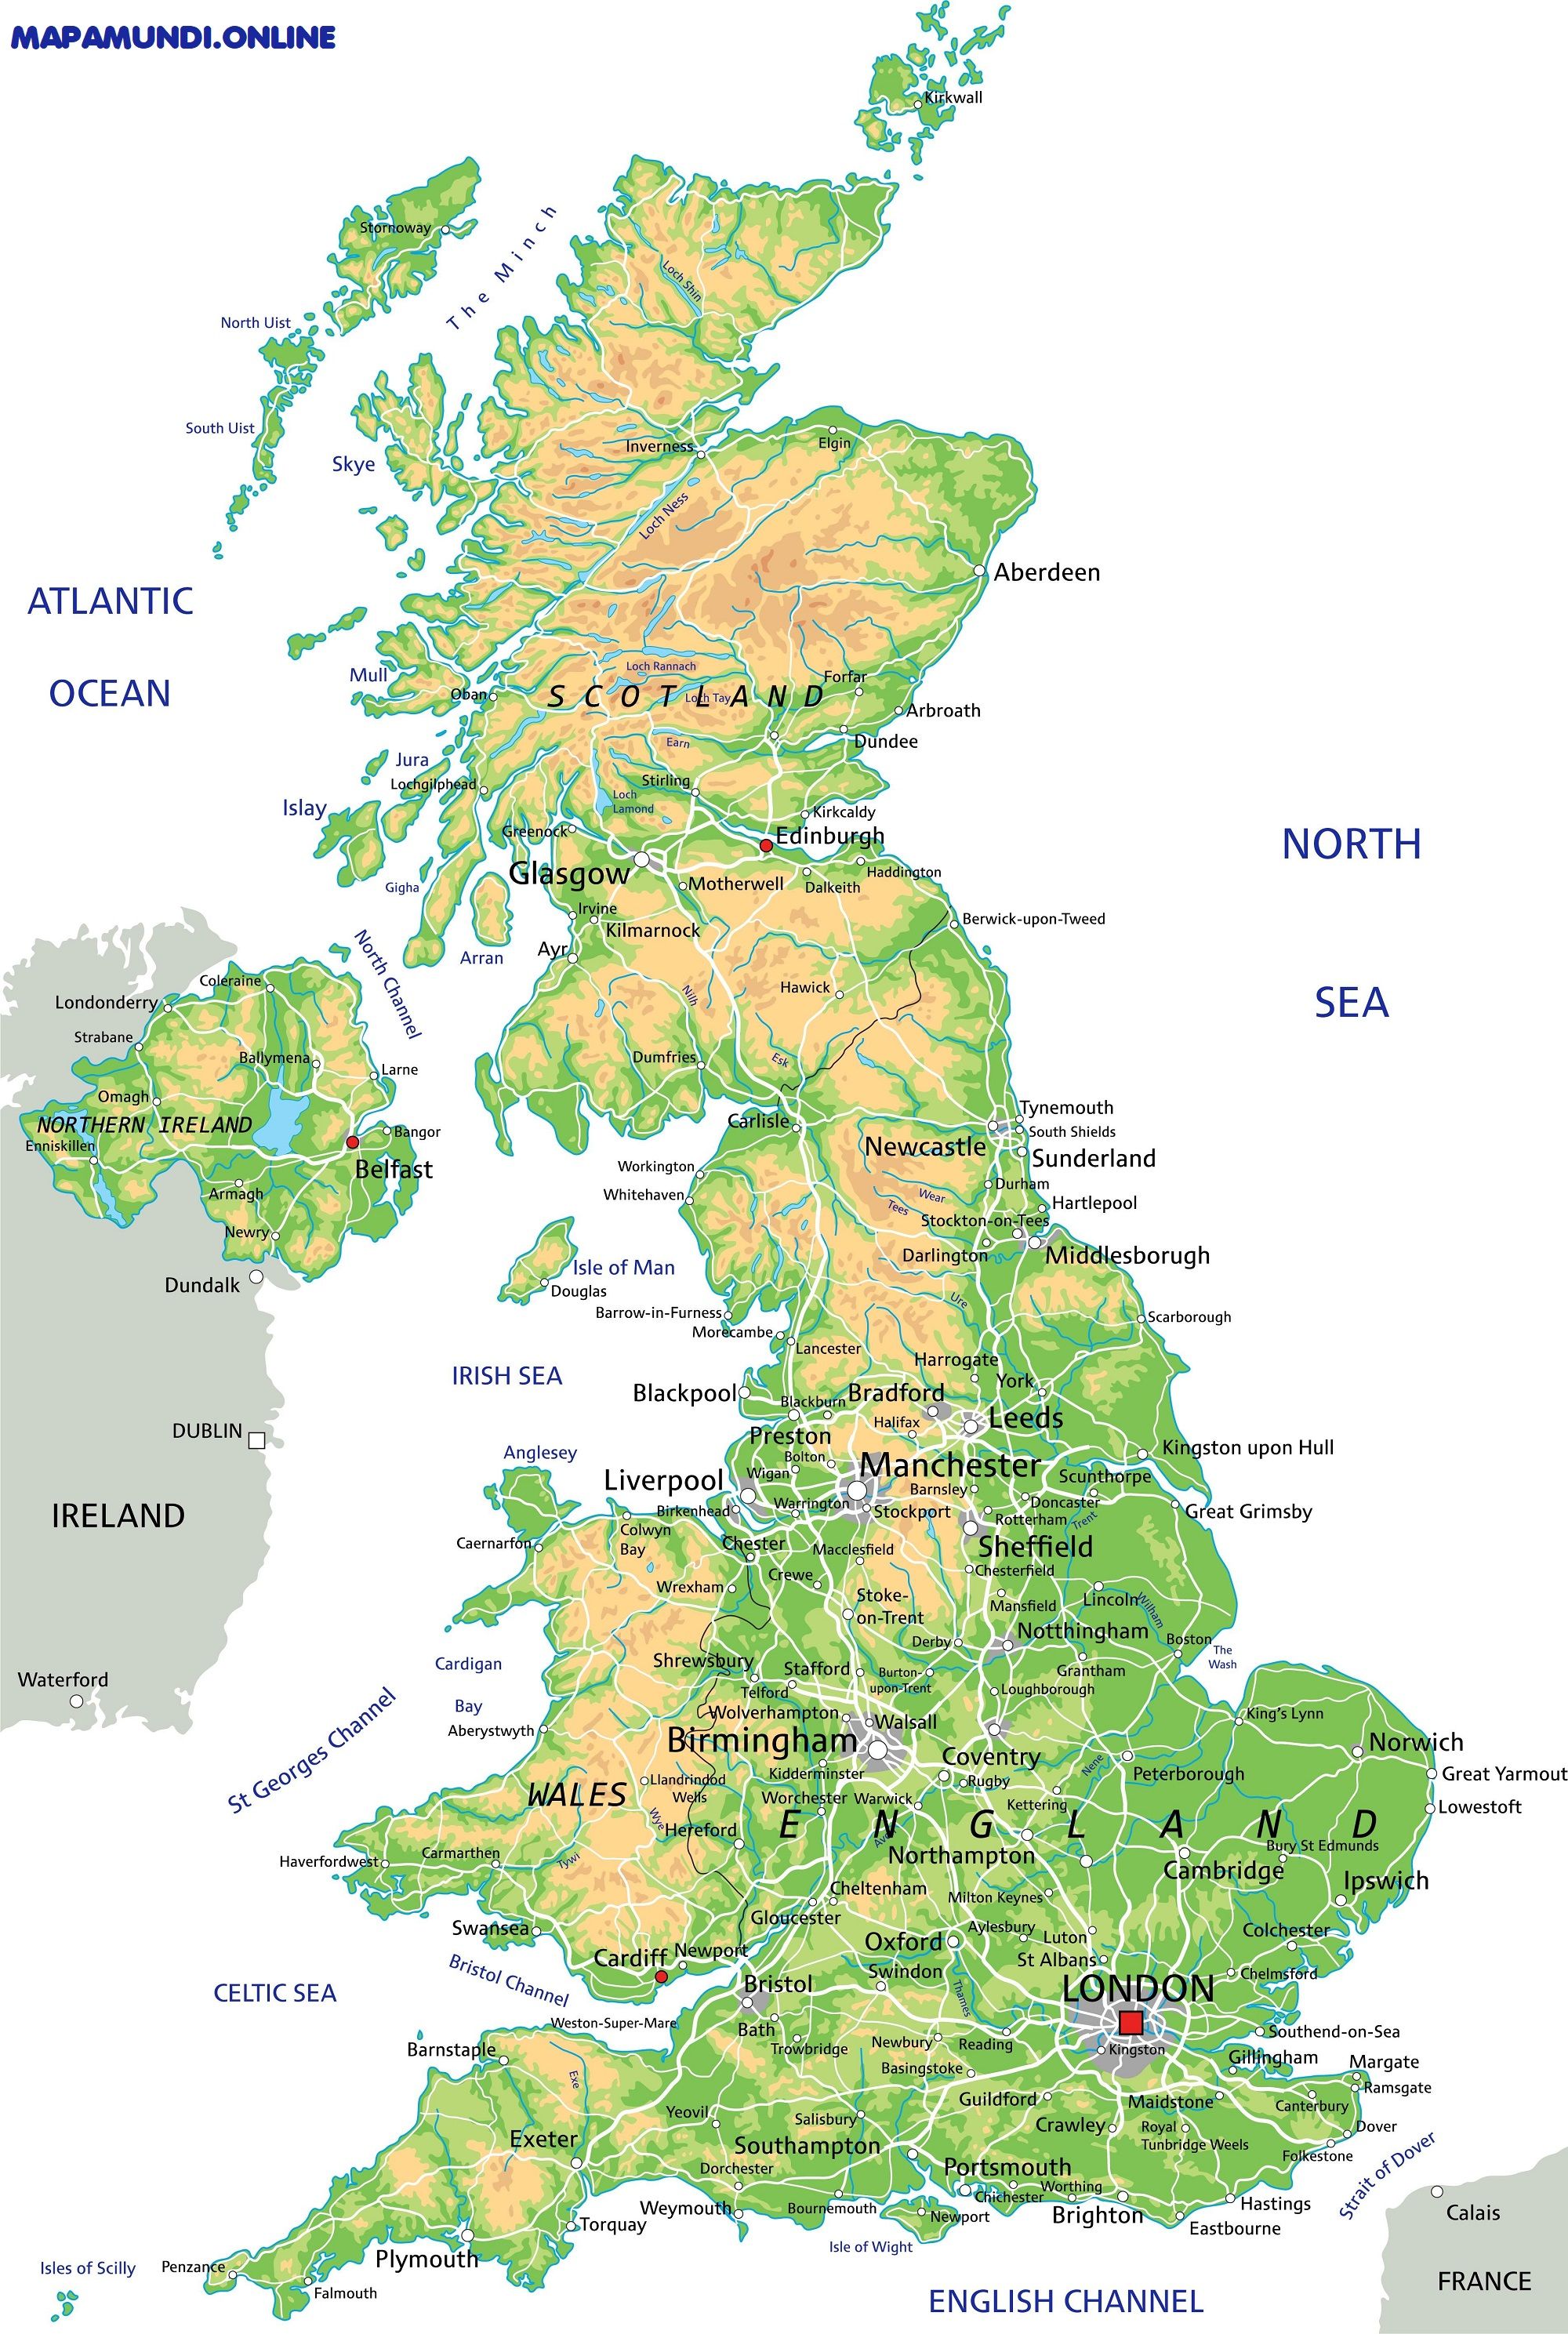 ZMFP146 Reversible político/físico laminado mapa Mapa de pared de Islas Británicas para niños 